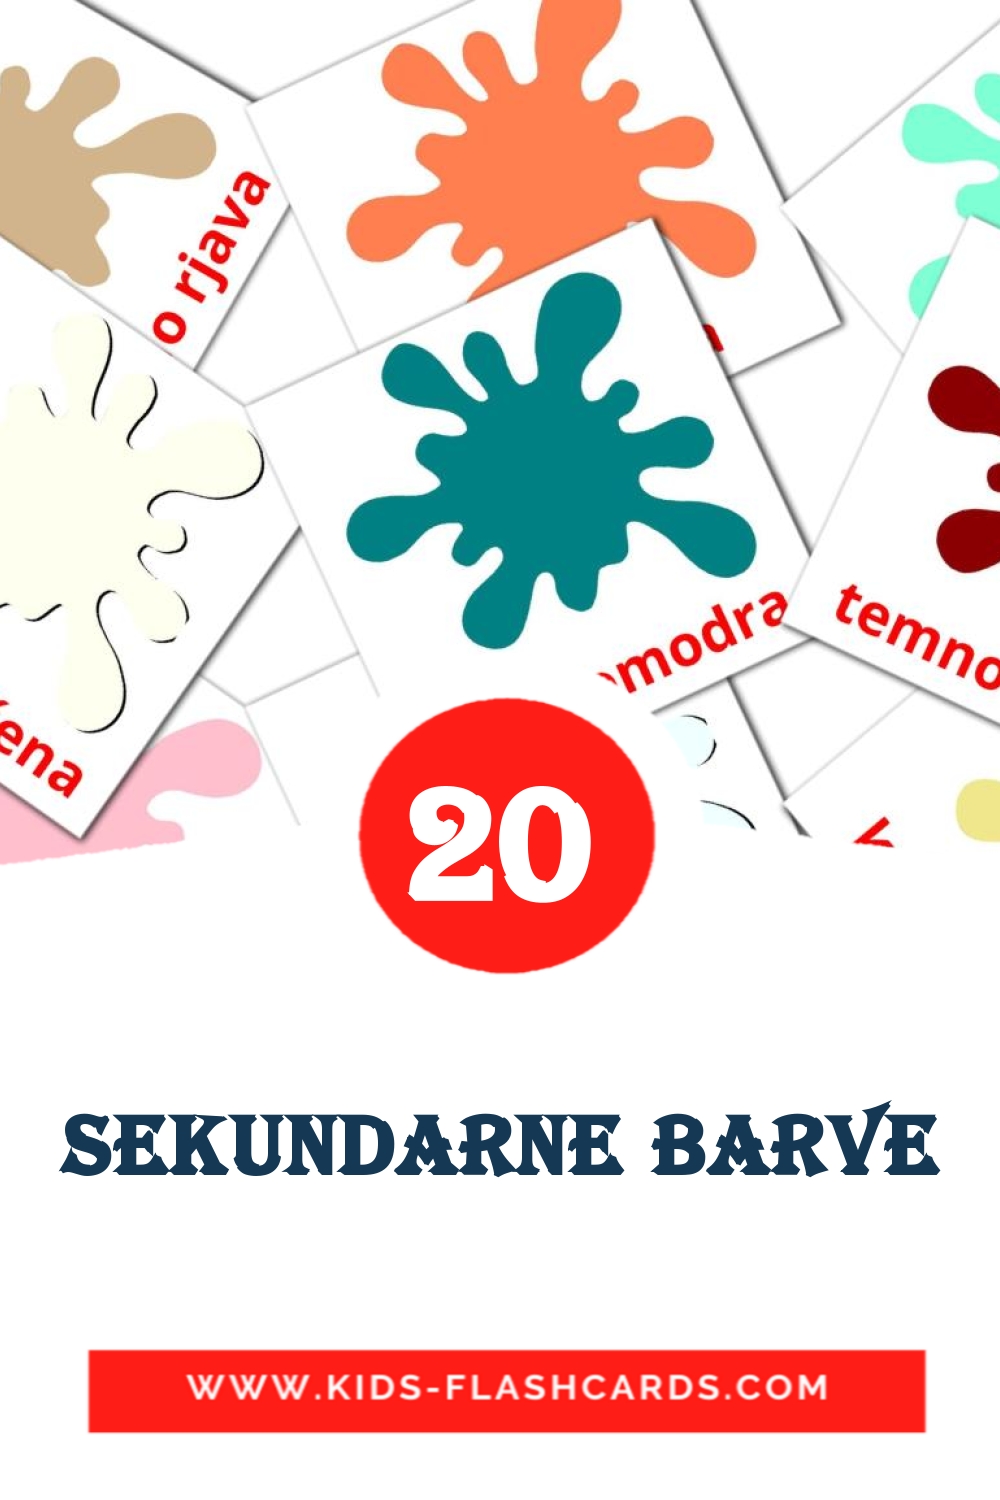 20 Sekundarne barve fotokaarten voor kleuters in het sloveens